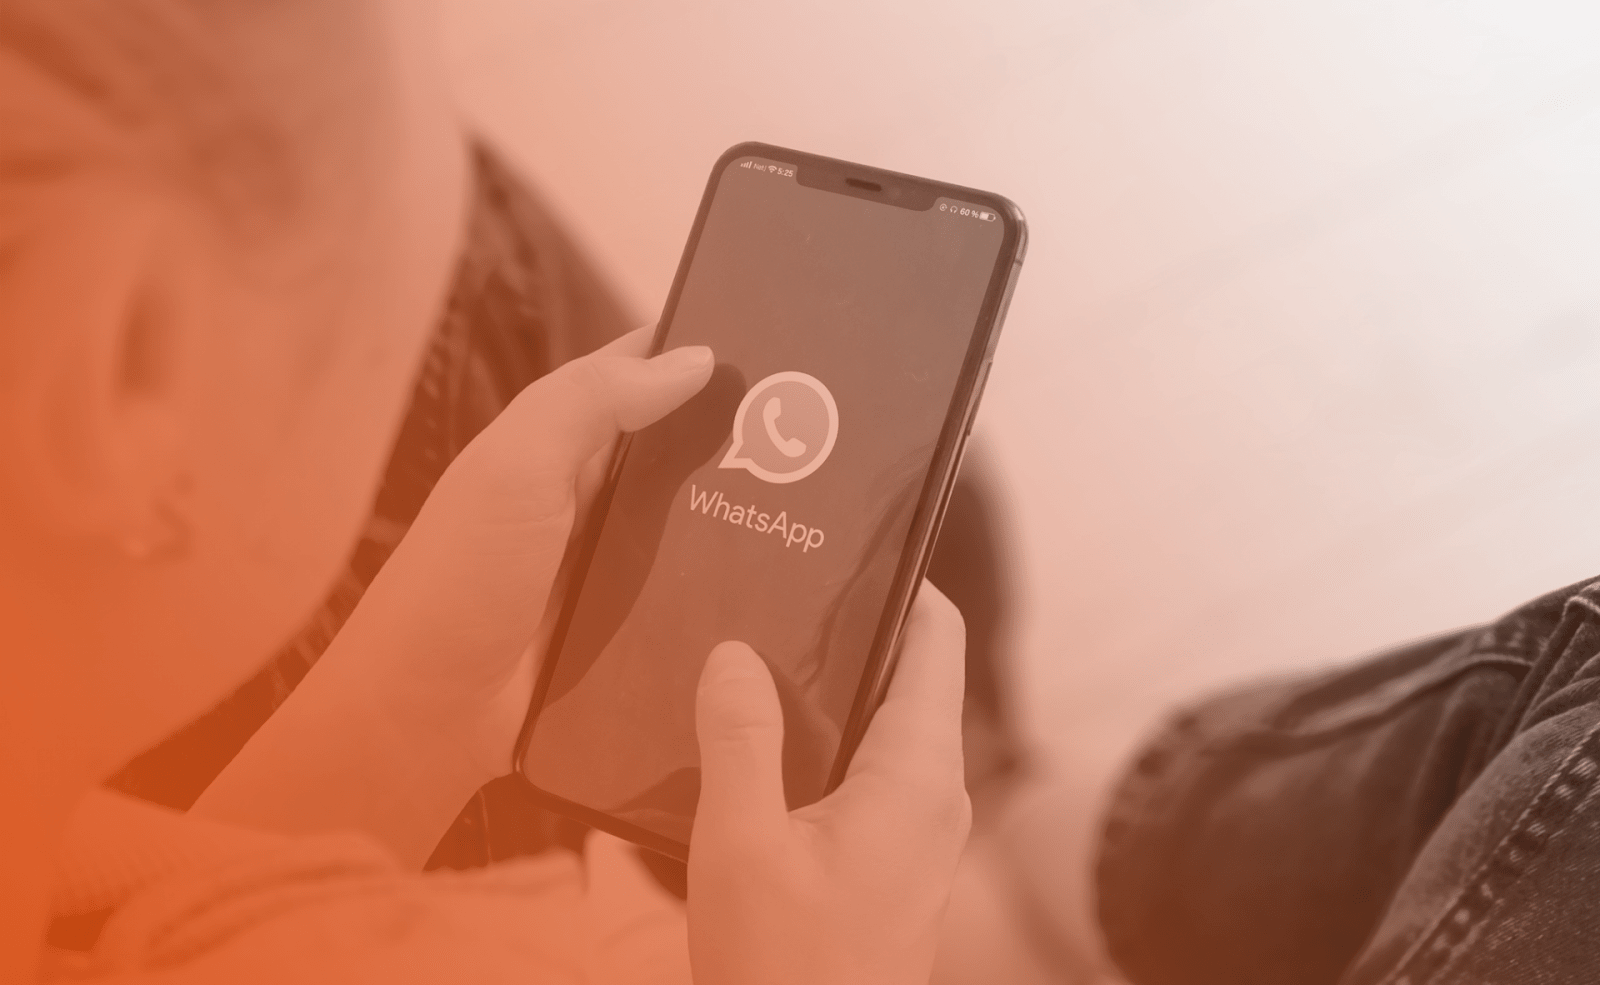 WhatsApp promete lançar recurso de autodestruição de fotos